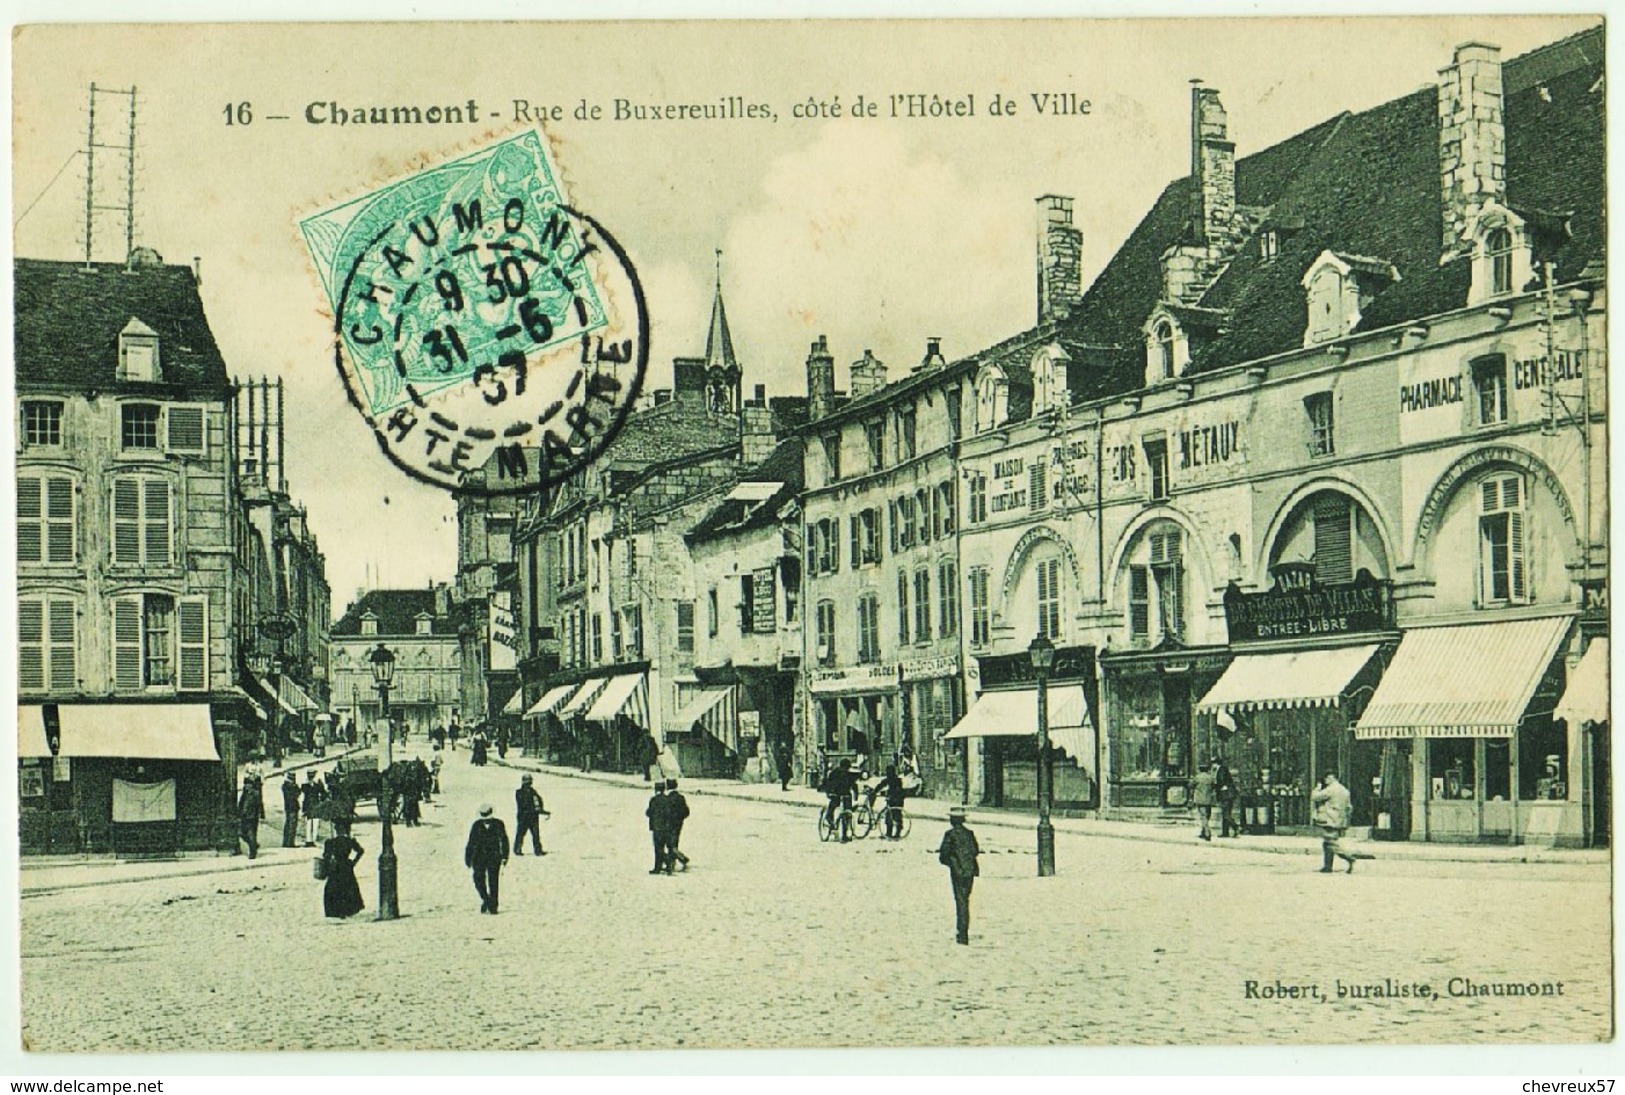 LOT 19 - VILLES ET VILLAGES DE FRANCE - 35 cartes anciennes dont villages Normandie